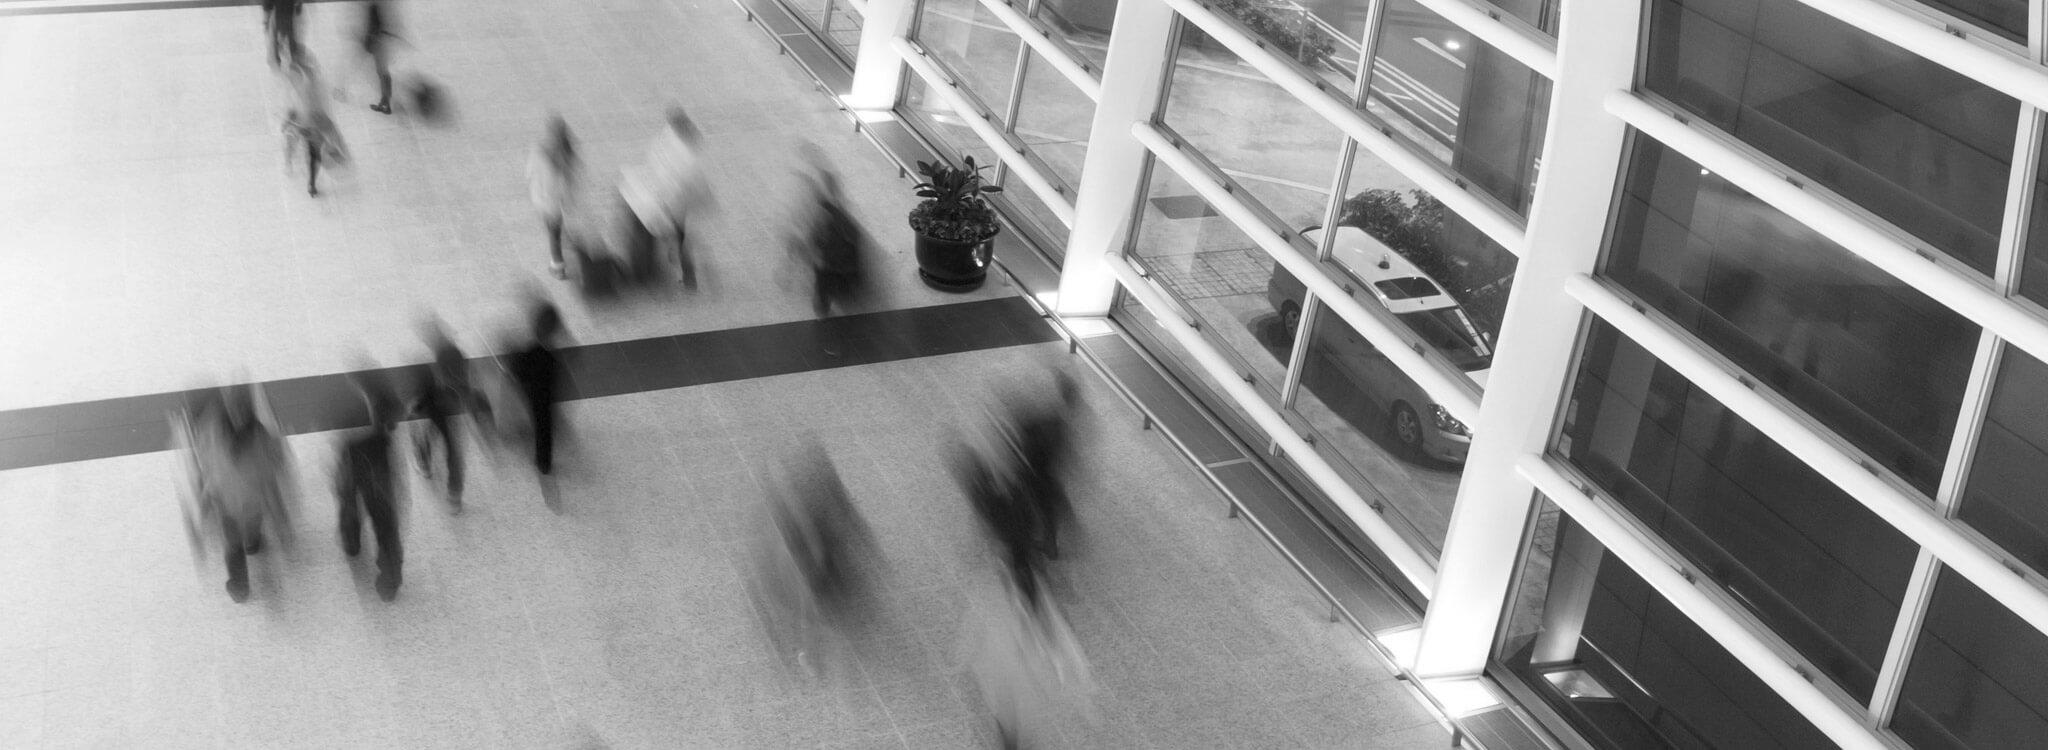 Una foto en blanco y negro de personas caminando en un aeropuerto